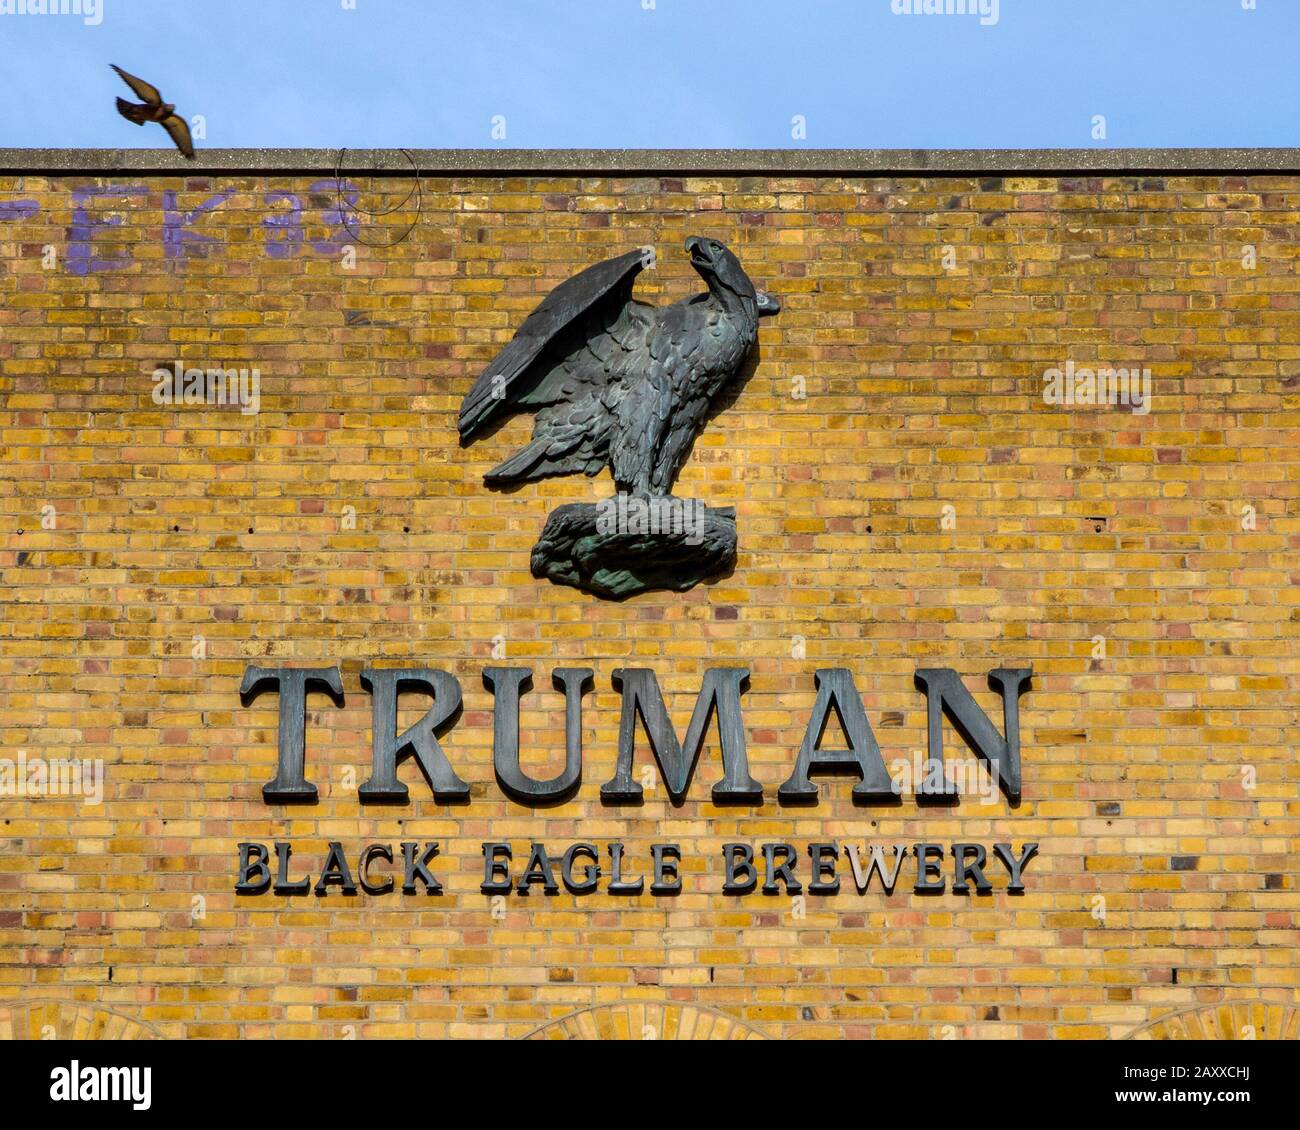 Londres, Royaume-Uni - 5 février 2020: Un panneau sur la façade de la brasserie Truman Black Eagle, située sur Brick Lane dans le East End de Londres, Royaume-Uni. Banque D'Images